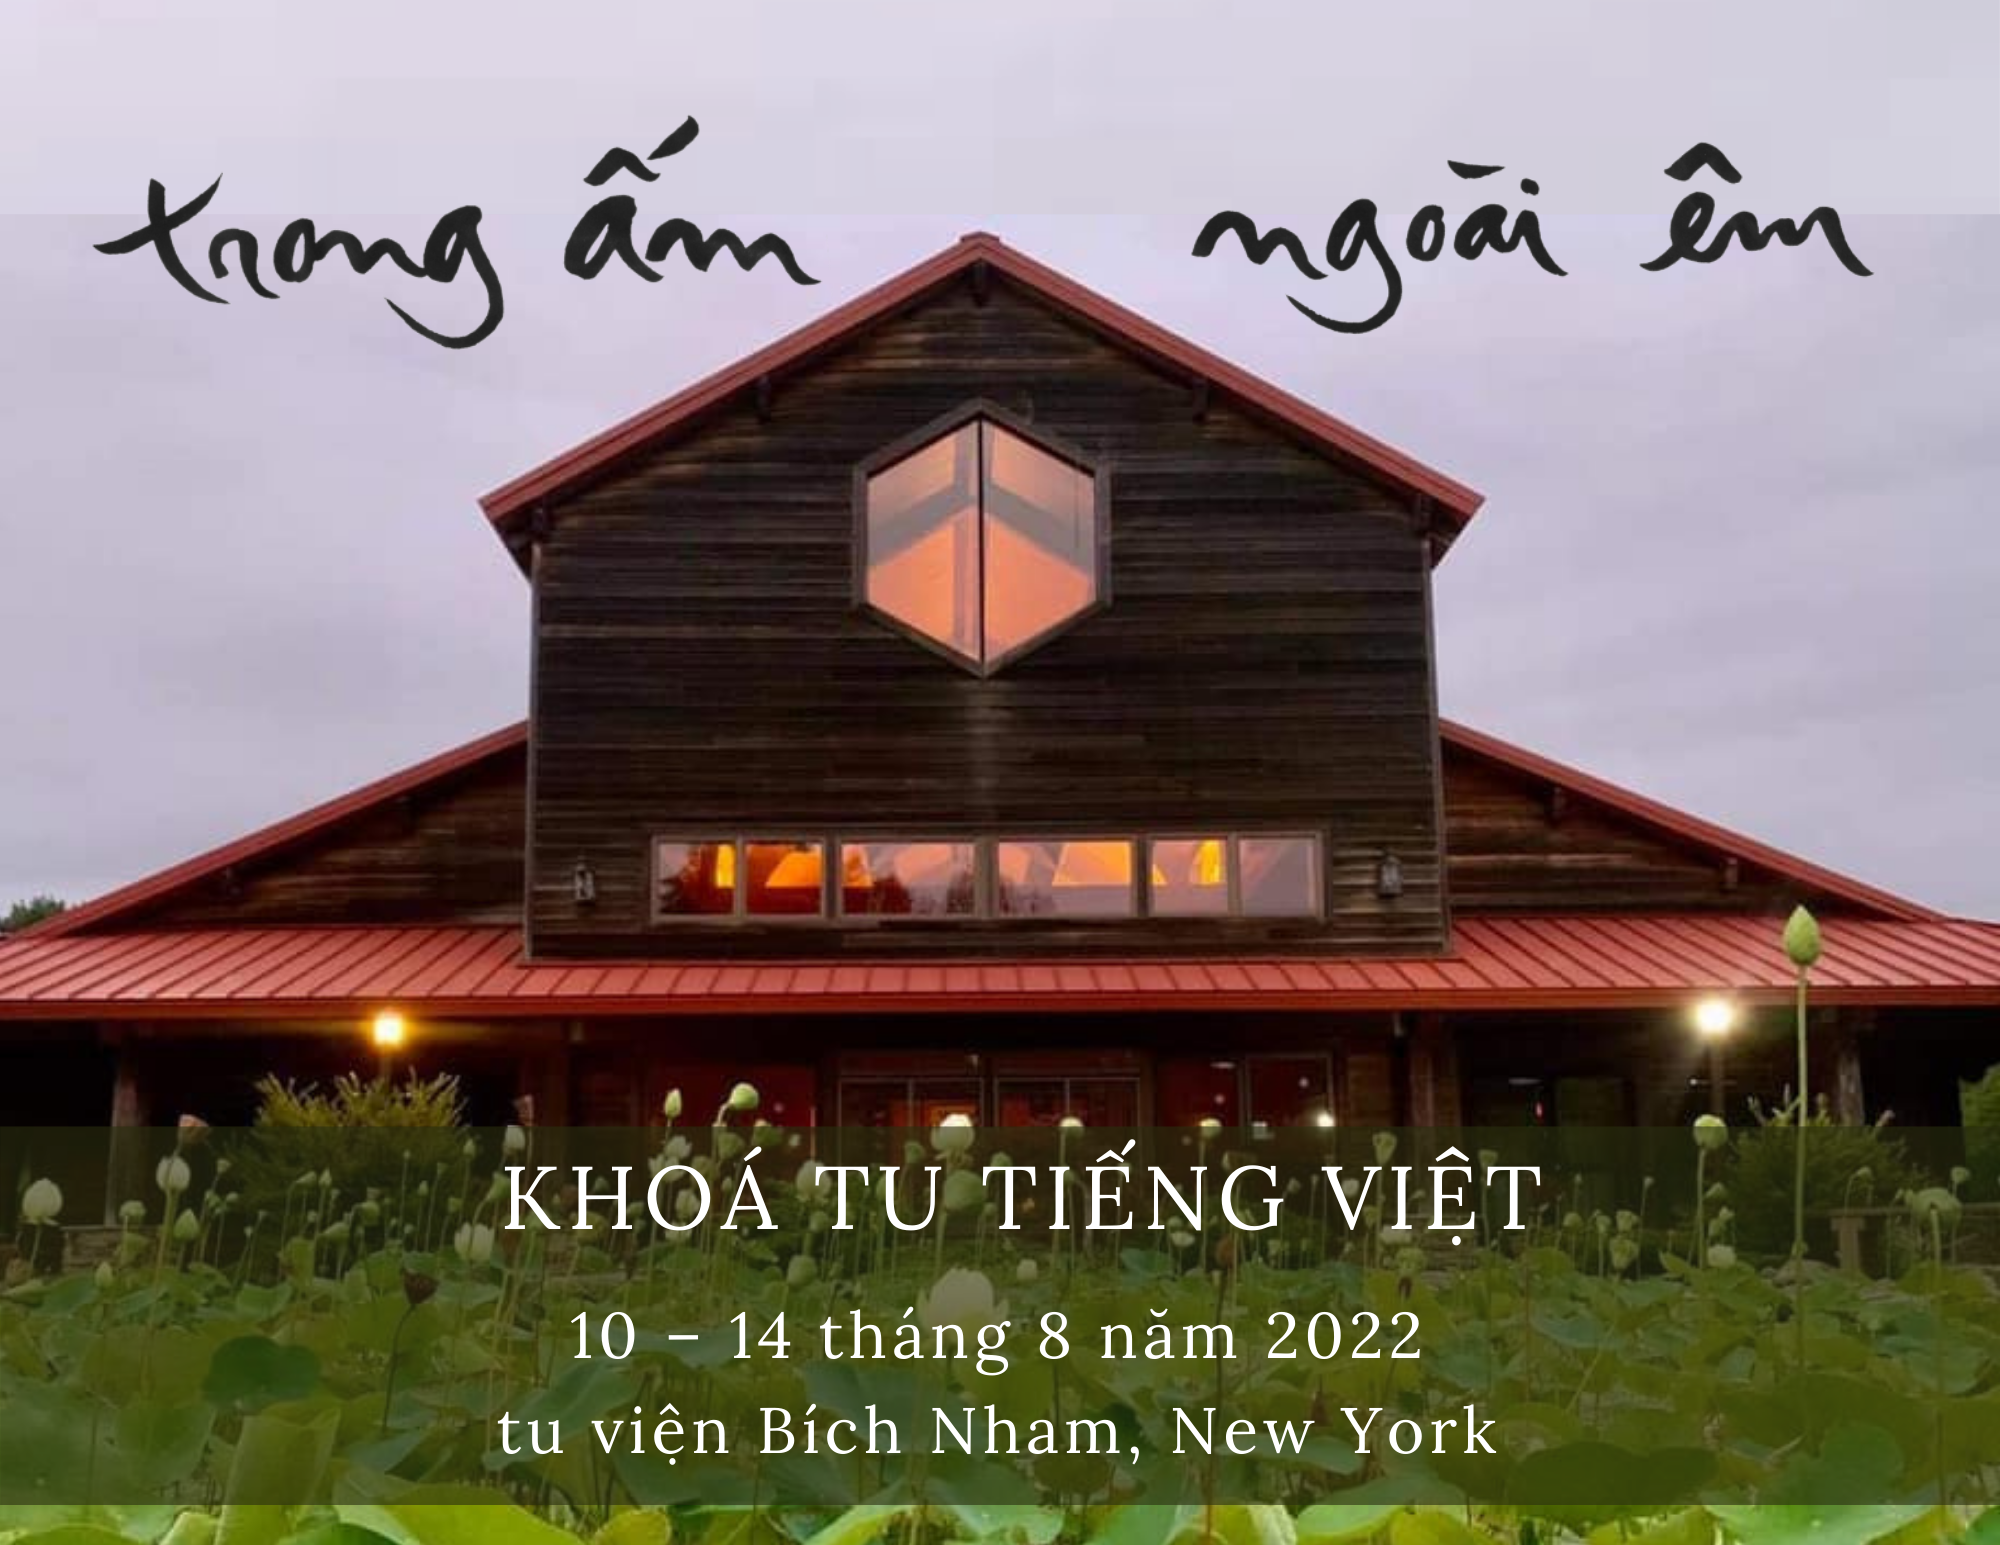 Khoá Tu Tiếng Việt 2022